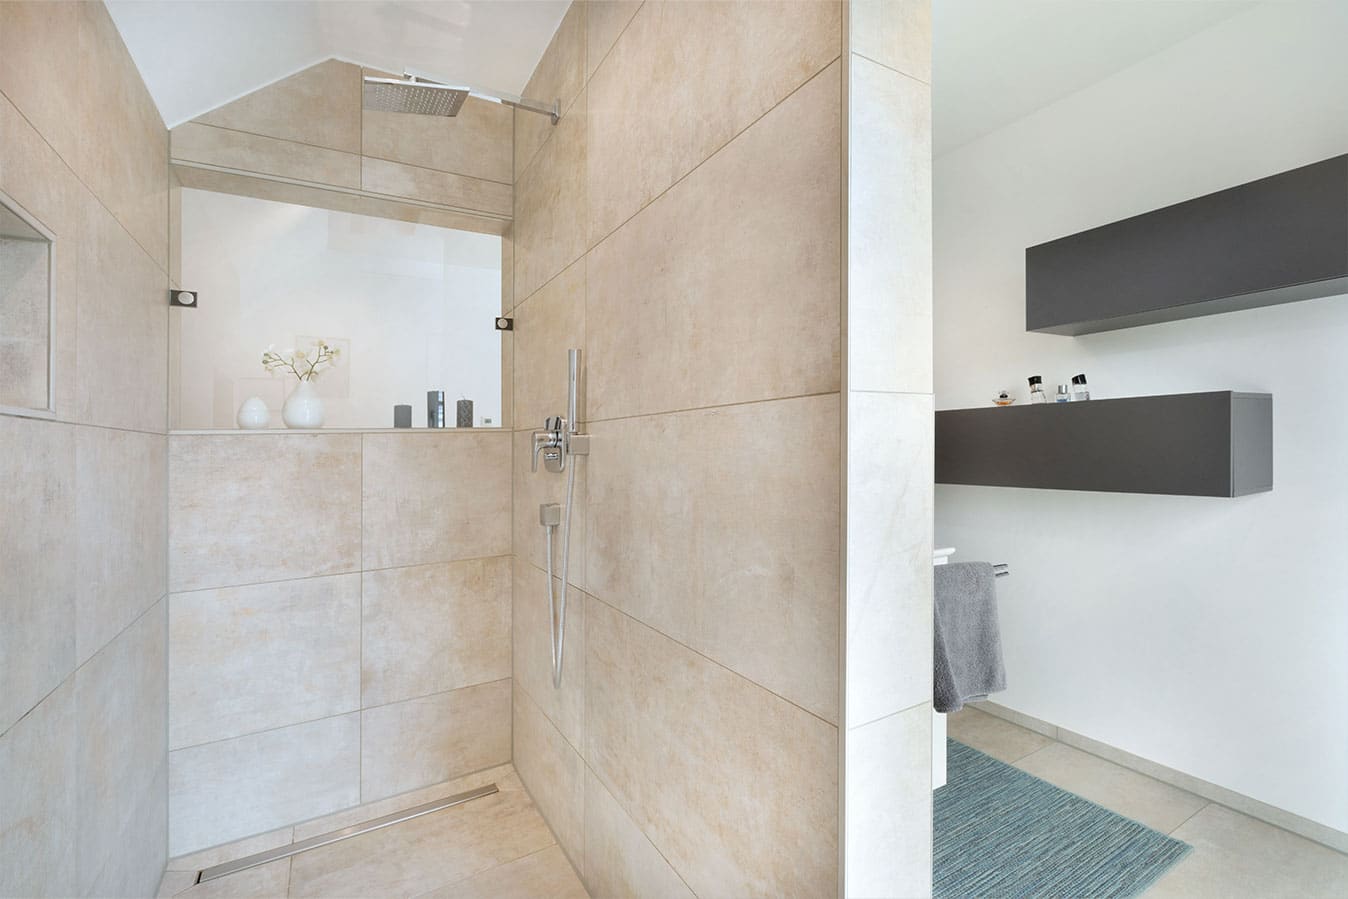 Einfamilienhaus-mit-doppelgarage-badezimmer-mit-offener-dusche-und-duschnische